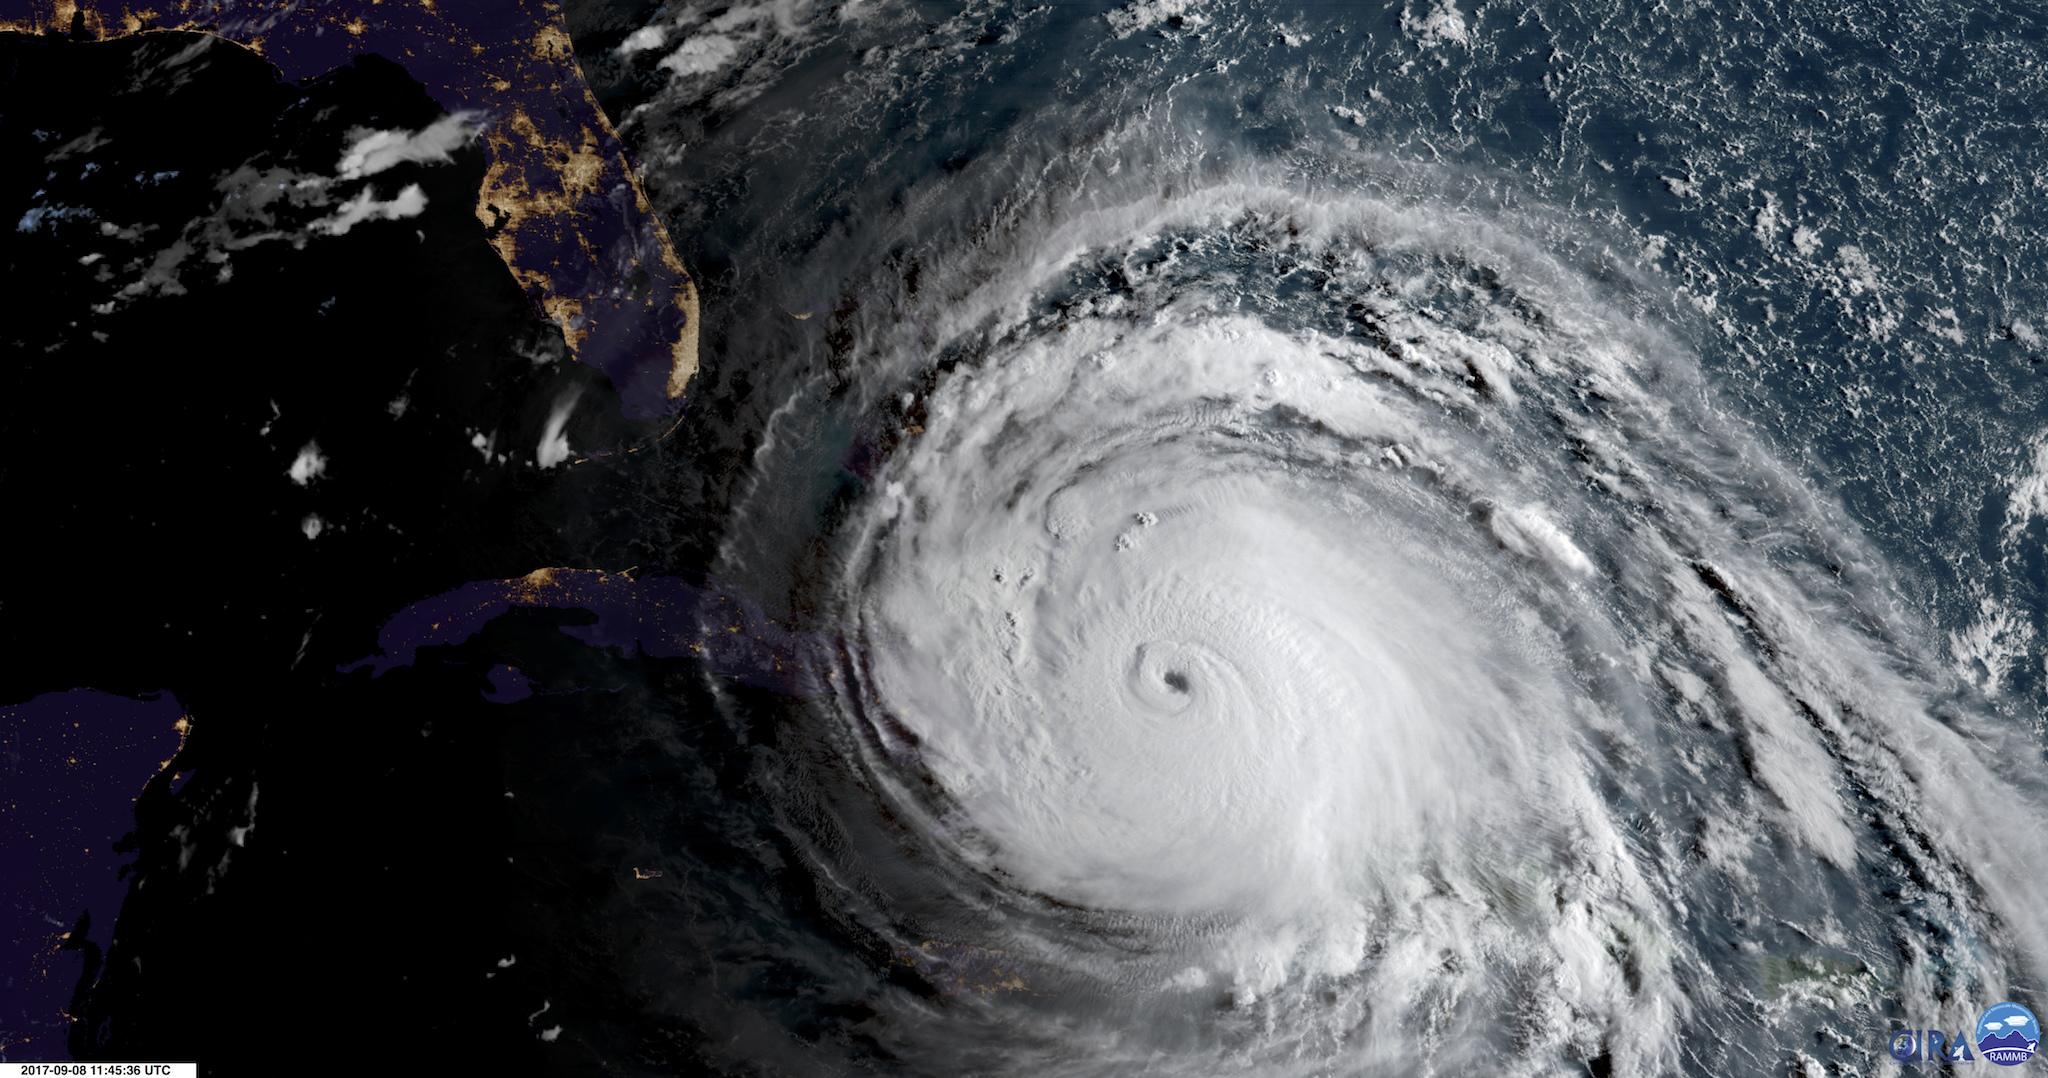 Hurricane names work on a six-year rotation